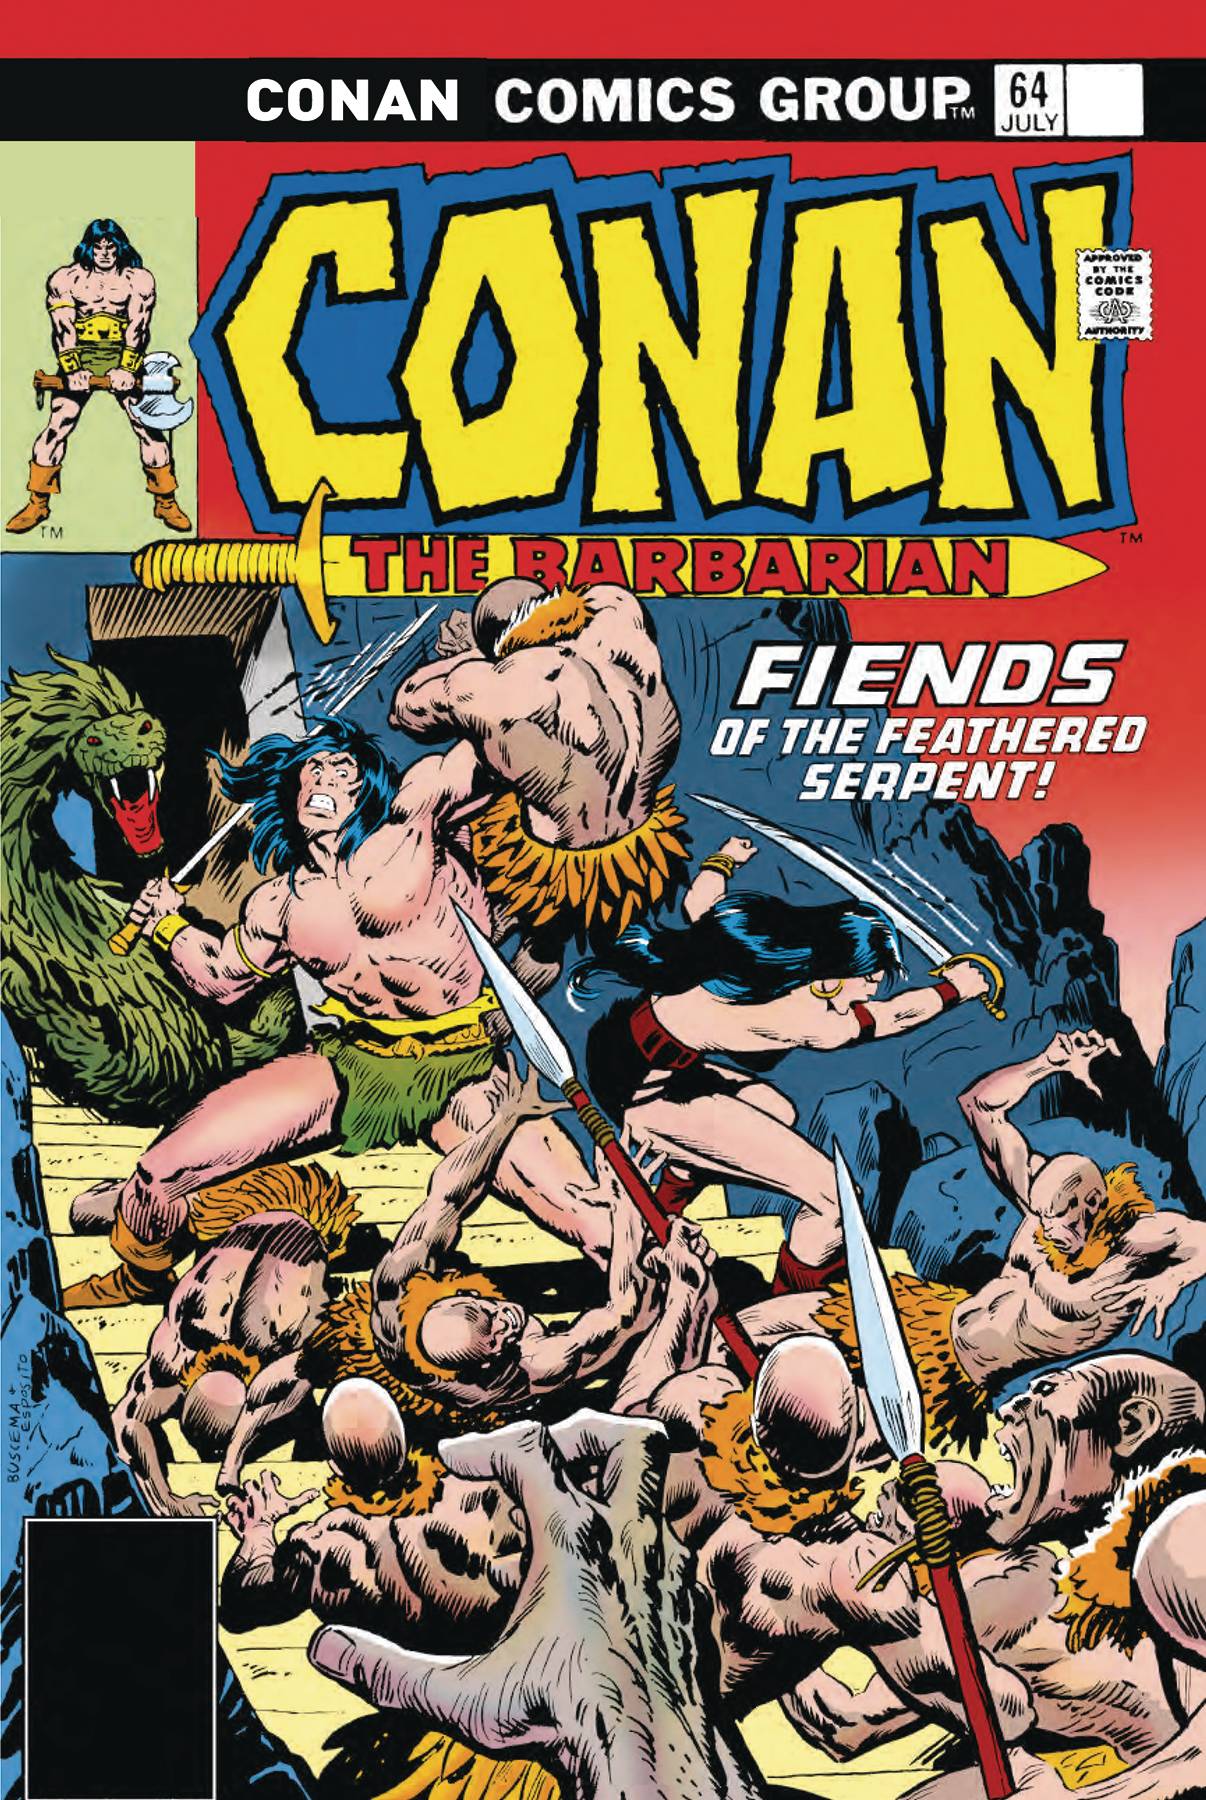 Conan The Barbarian: The Original Comics Omnibus Vol.3 HC DM Variant *PRE-ORDER*